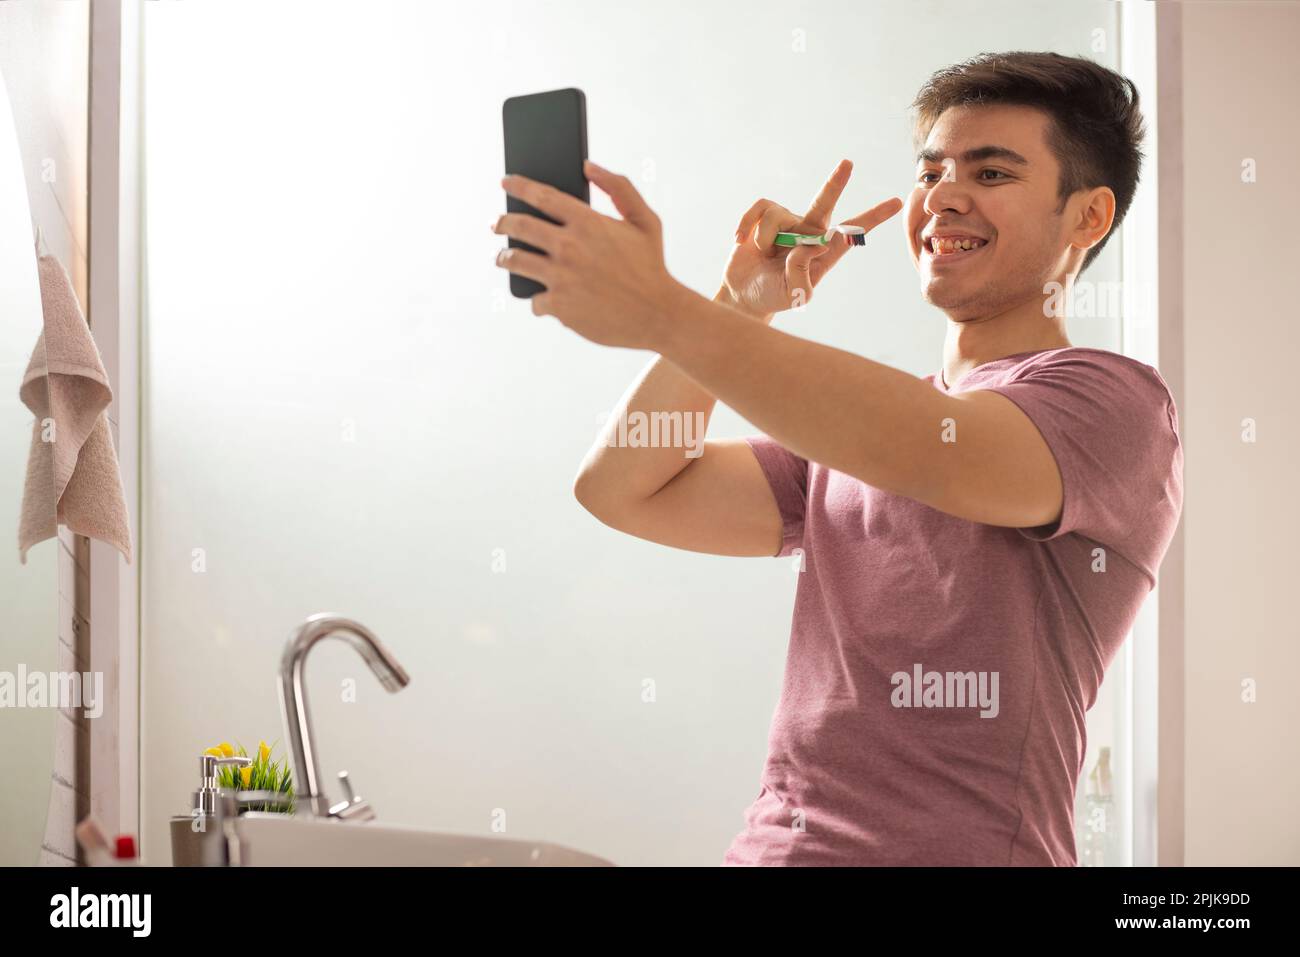 Junger Mann, der beim Videogespräch Gesten macht, während er im Badezimmer Zähne putzt Stockfoto